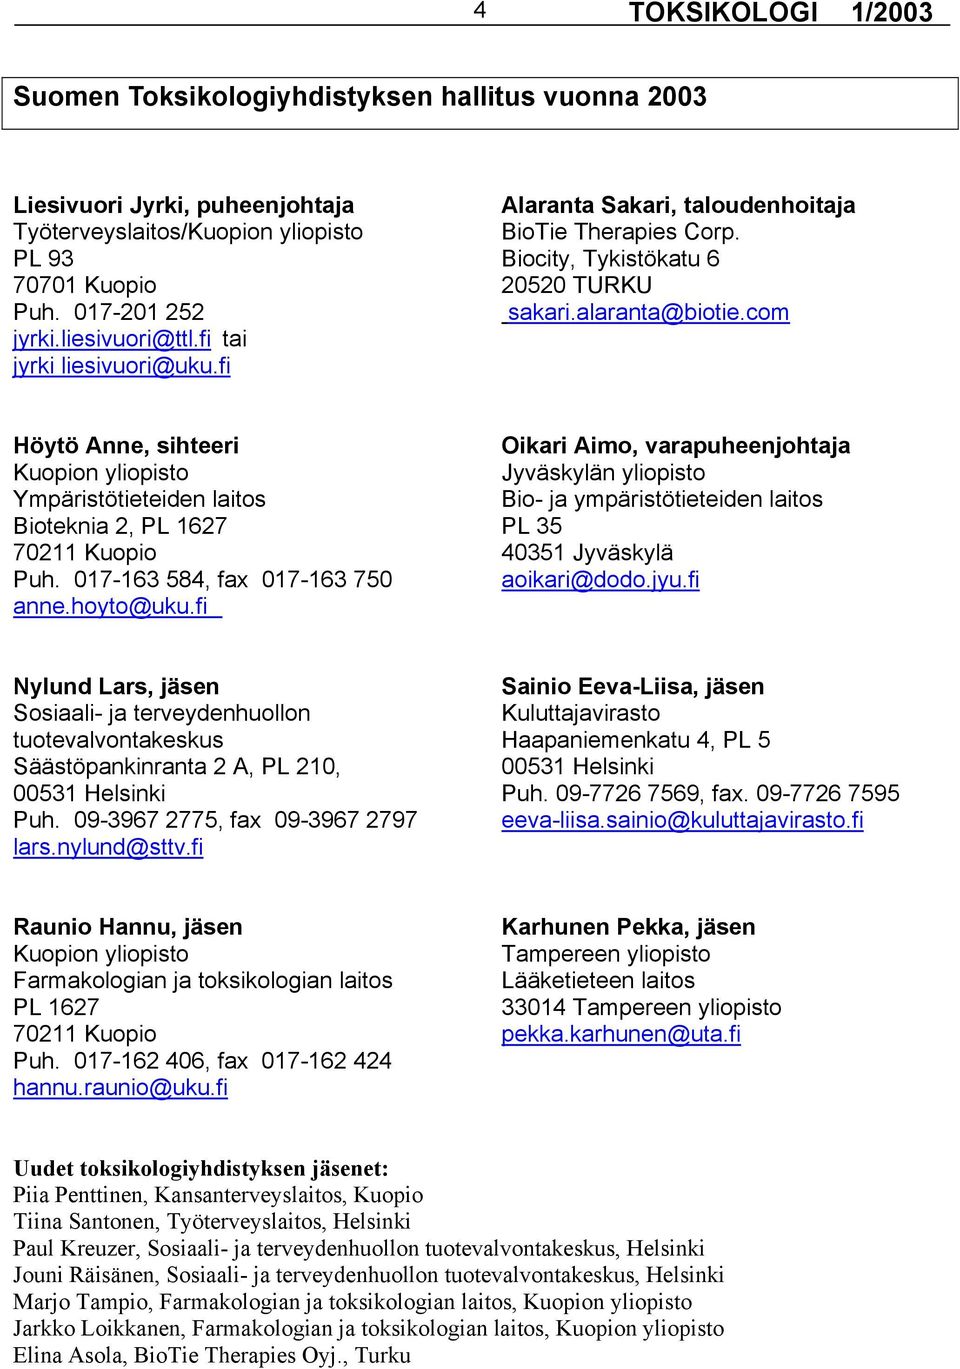 fi Höytö Anne, sihteeri Oikari Aimo, varapuheenjohtaja Kuopion yliopisto Jyväskylän yliopisto Ympäristötieteiden laitos Bio- ja ympäristötieteiden laitos Bioteknia 2, PL 1627 PL 35 70211 Kuopio 40351